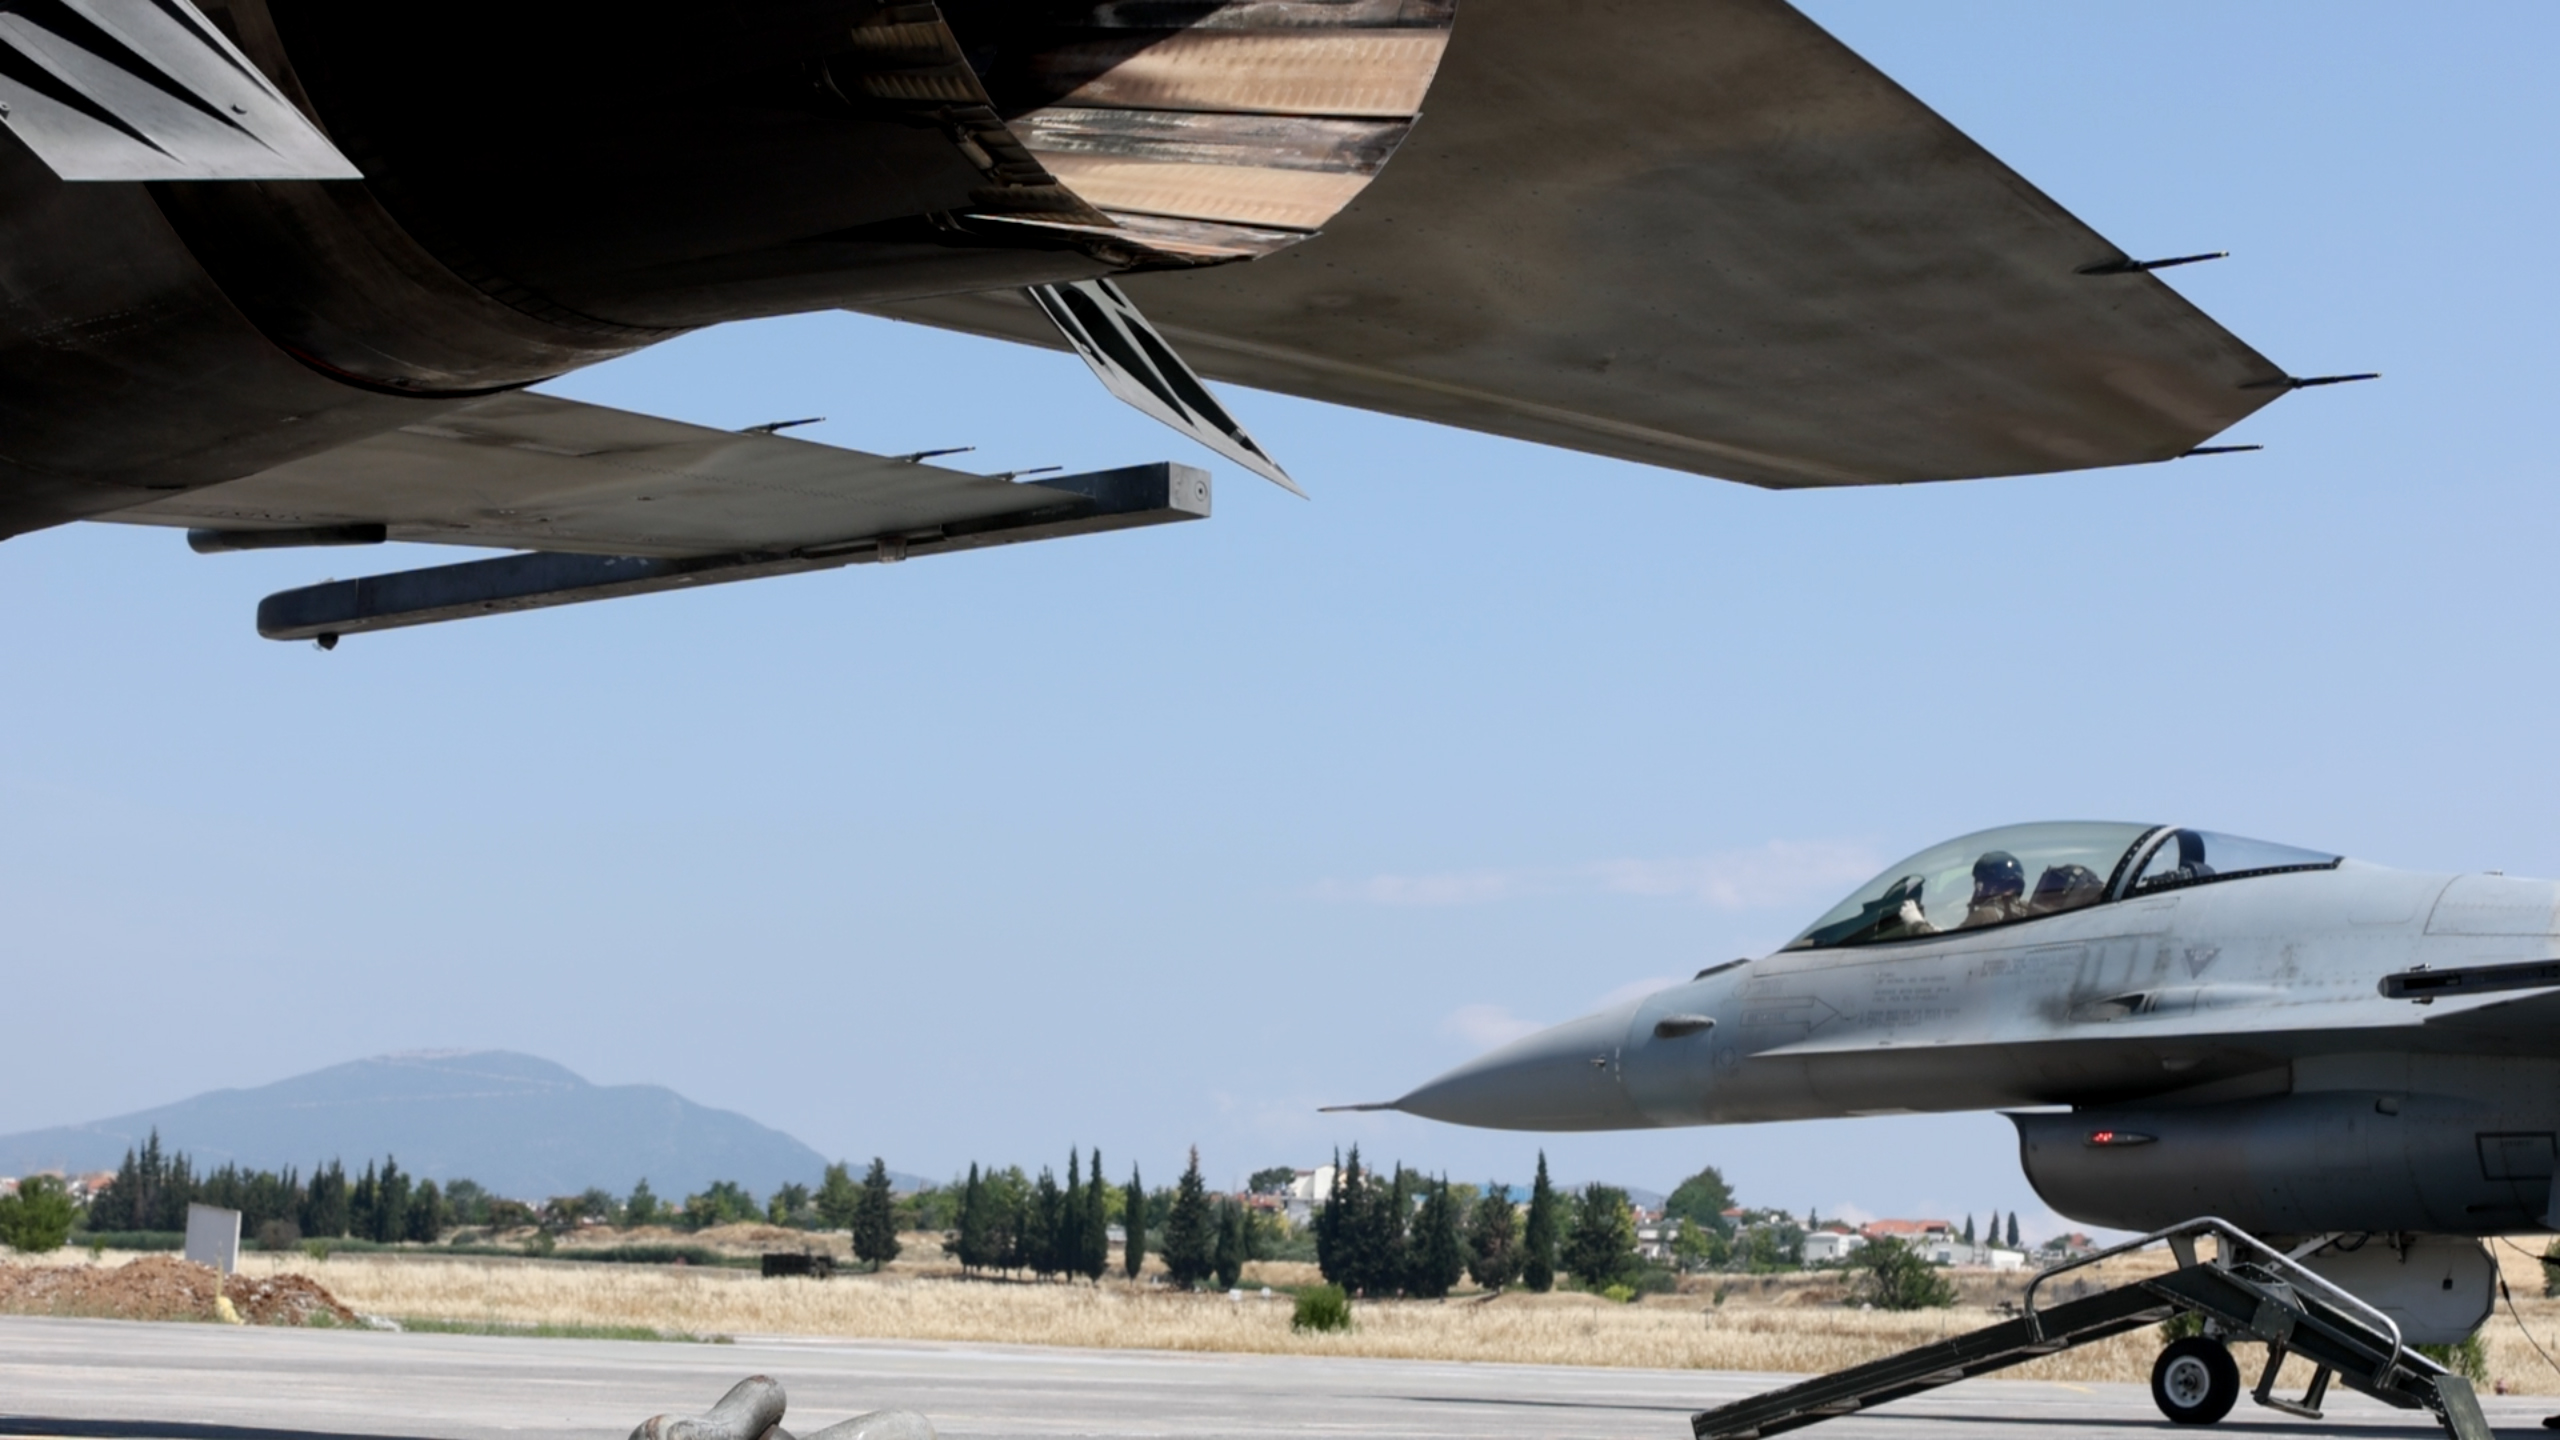 F-16 Viper: Επιτυχημένη η πρώτη δοκιμαστική πτήση των υπερσύγχρονων μαχητικών αεροσκαφών της Πολεμικής Αεροπορίας